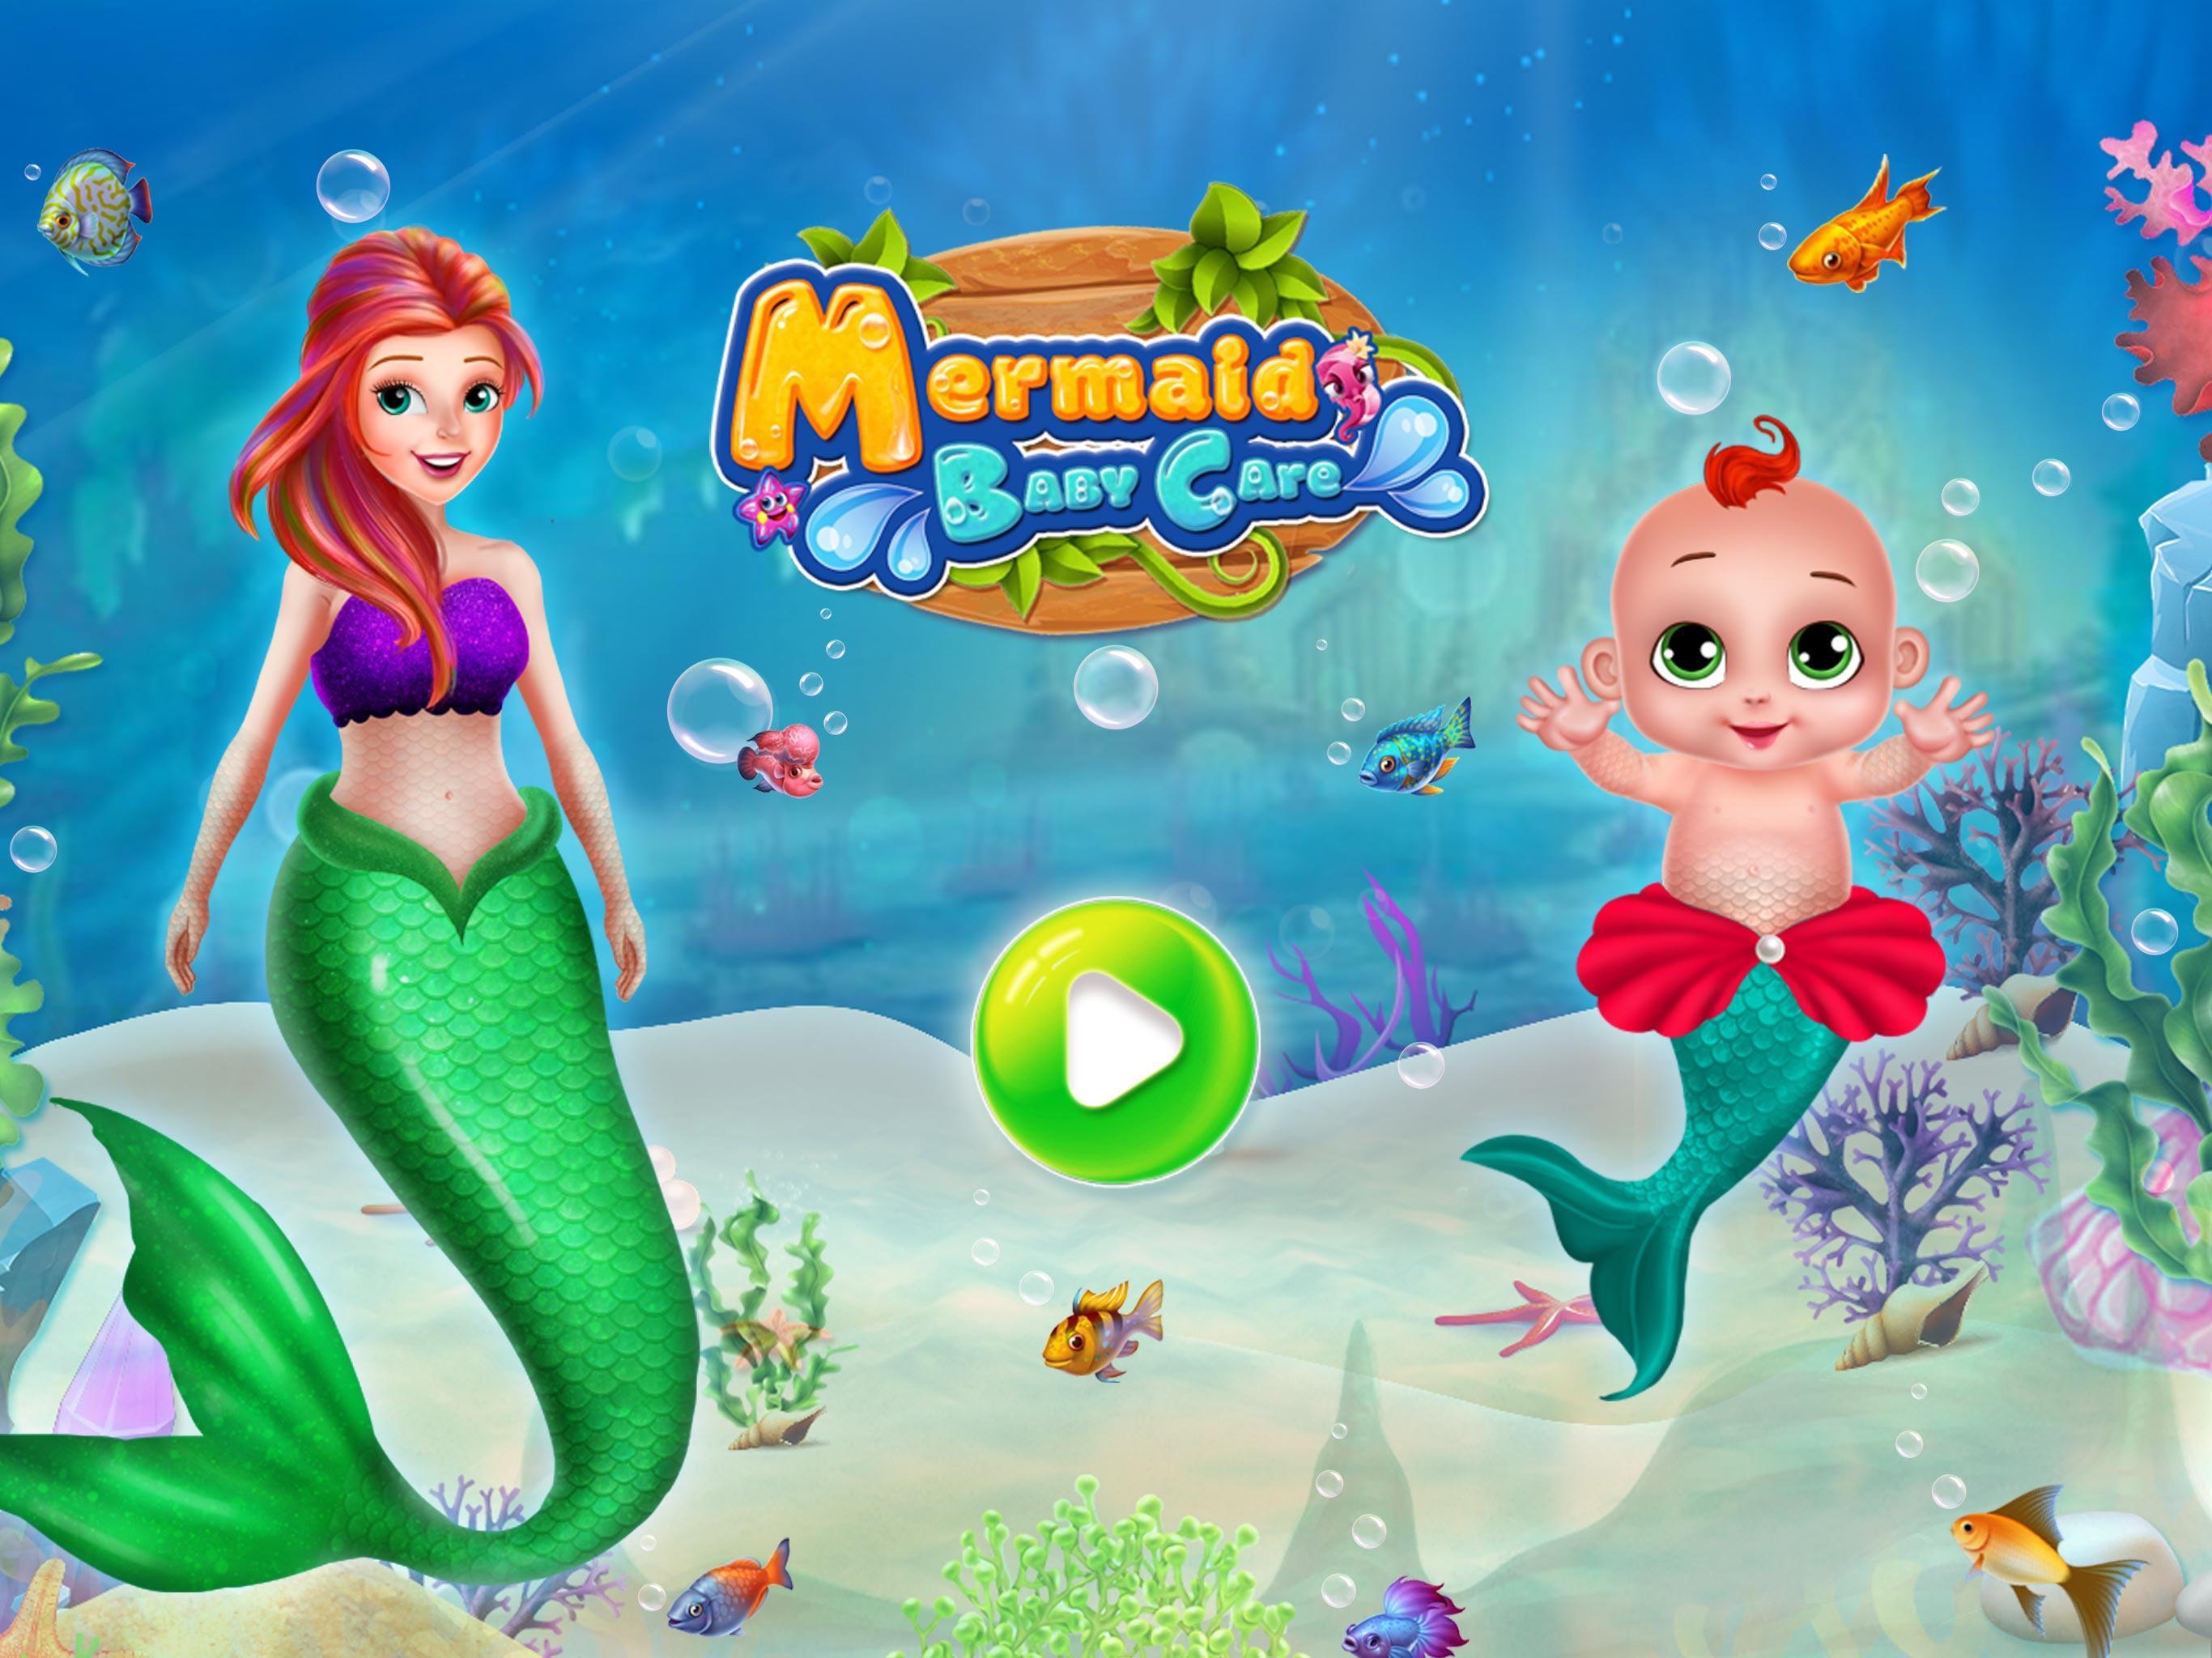 Mermaid Girl Care-Mermaid Game Screenshot 1